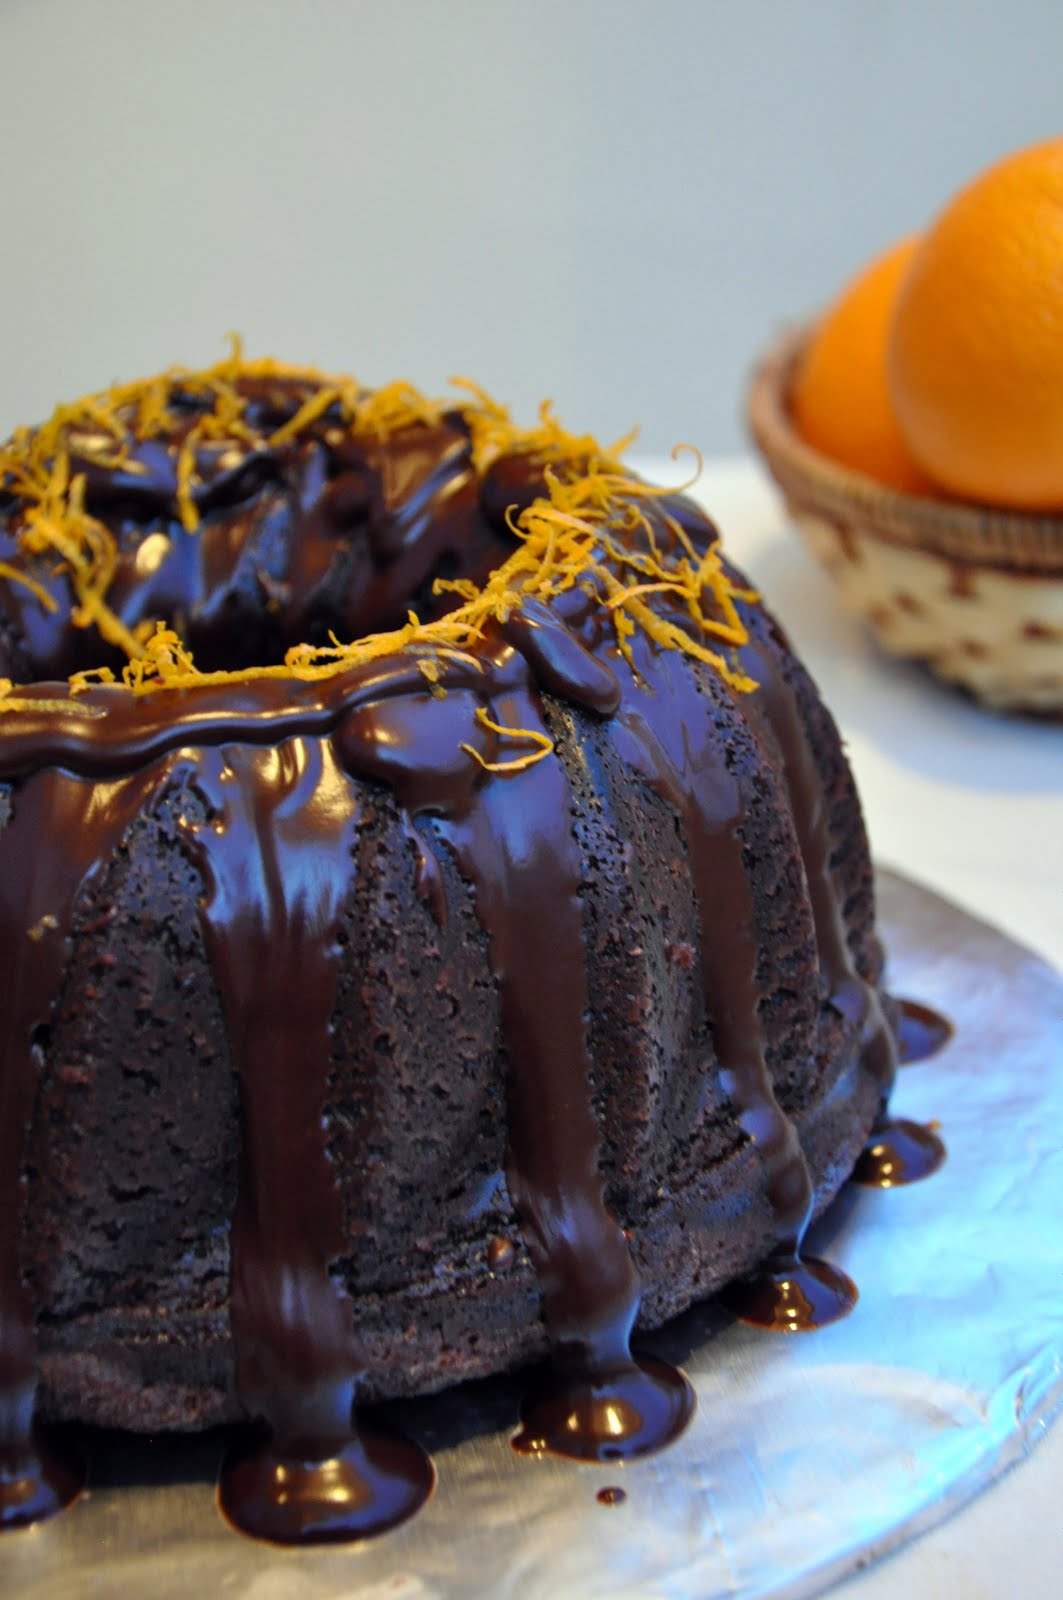 Served with love: Chocolate Orange Bundt Cake